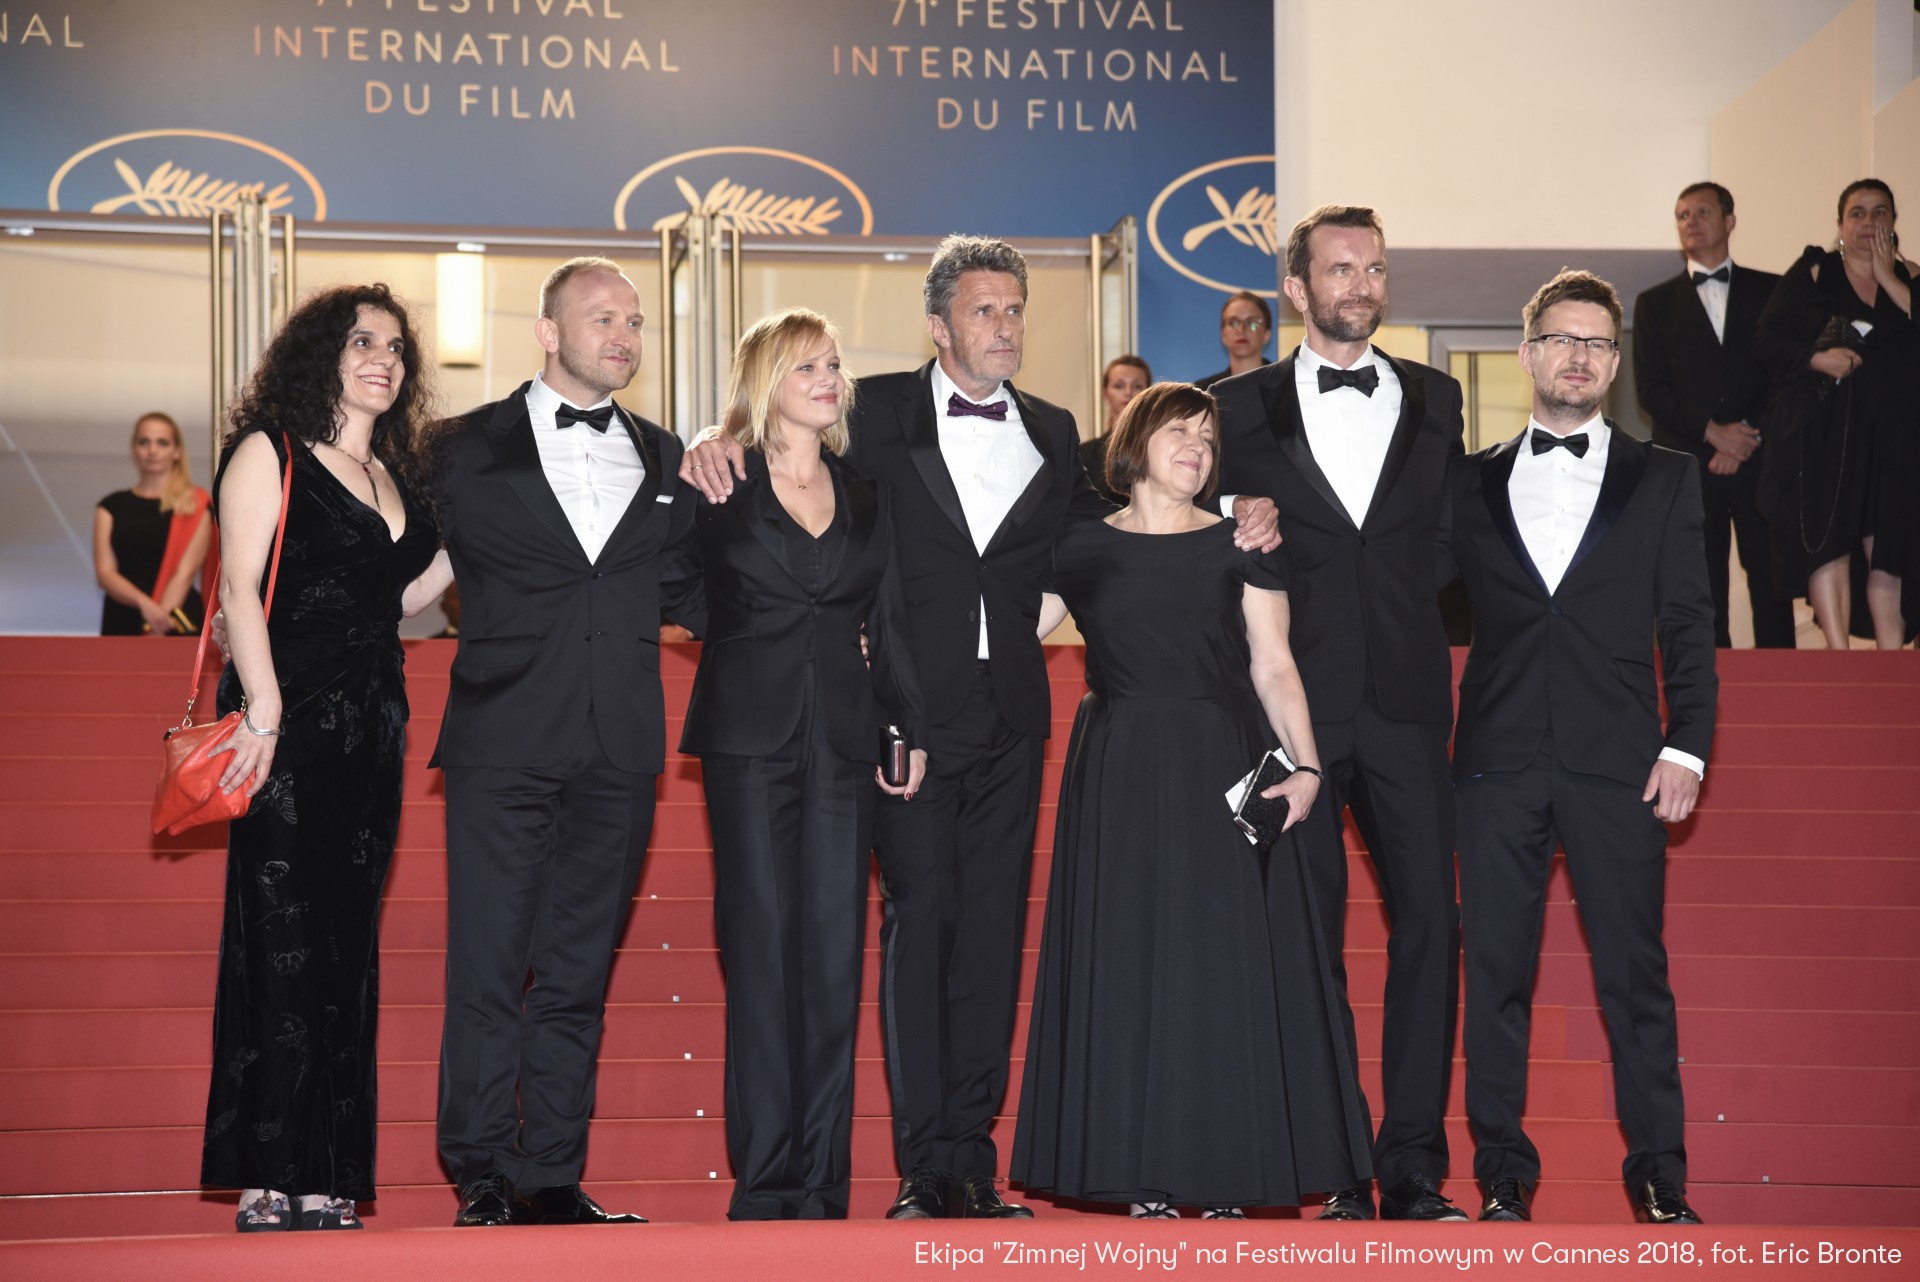 Ekipa "Zimnej Wojny" na Festiwalu Filmowym w Cannes 2018